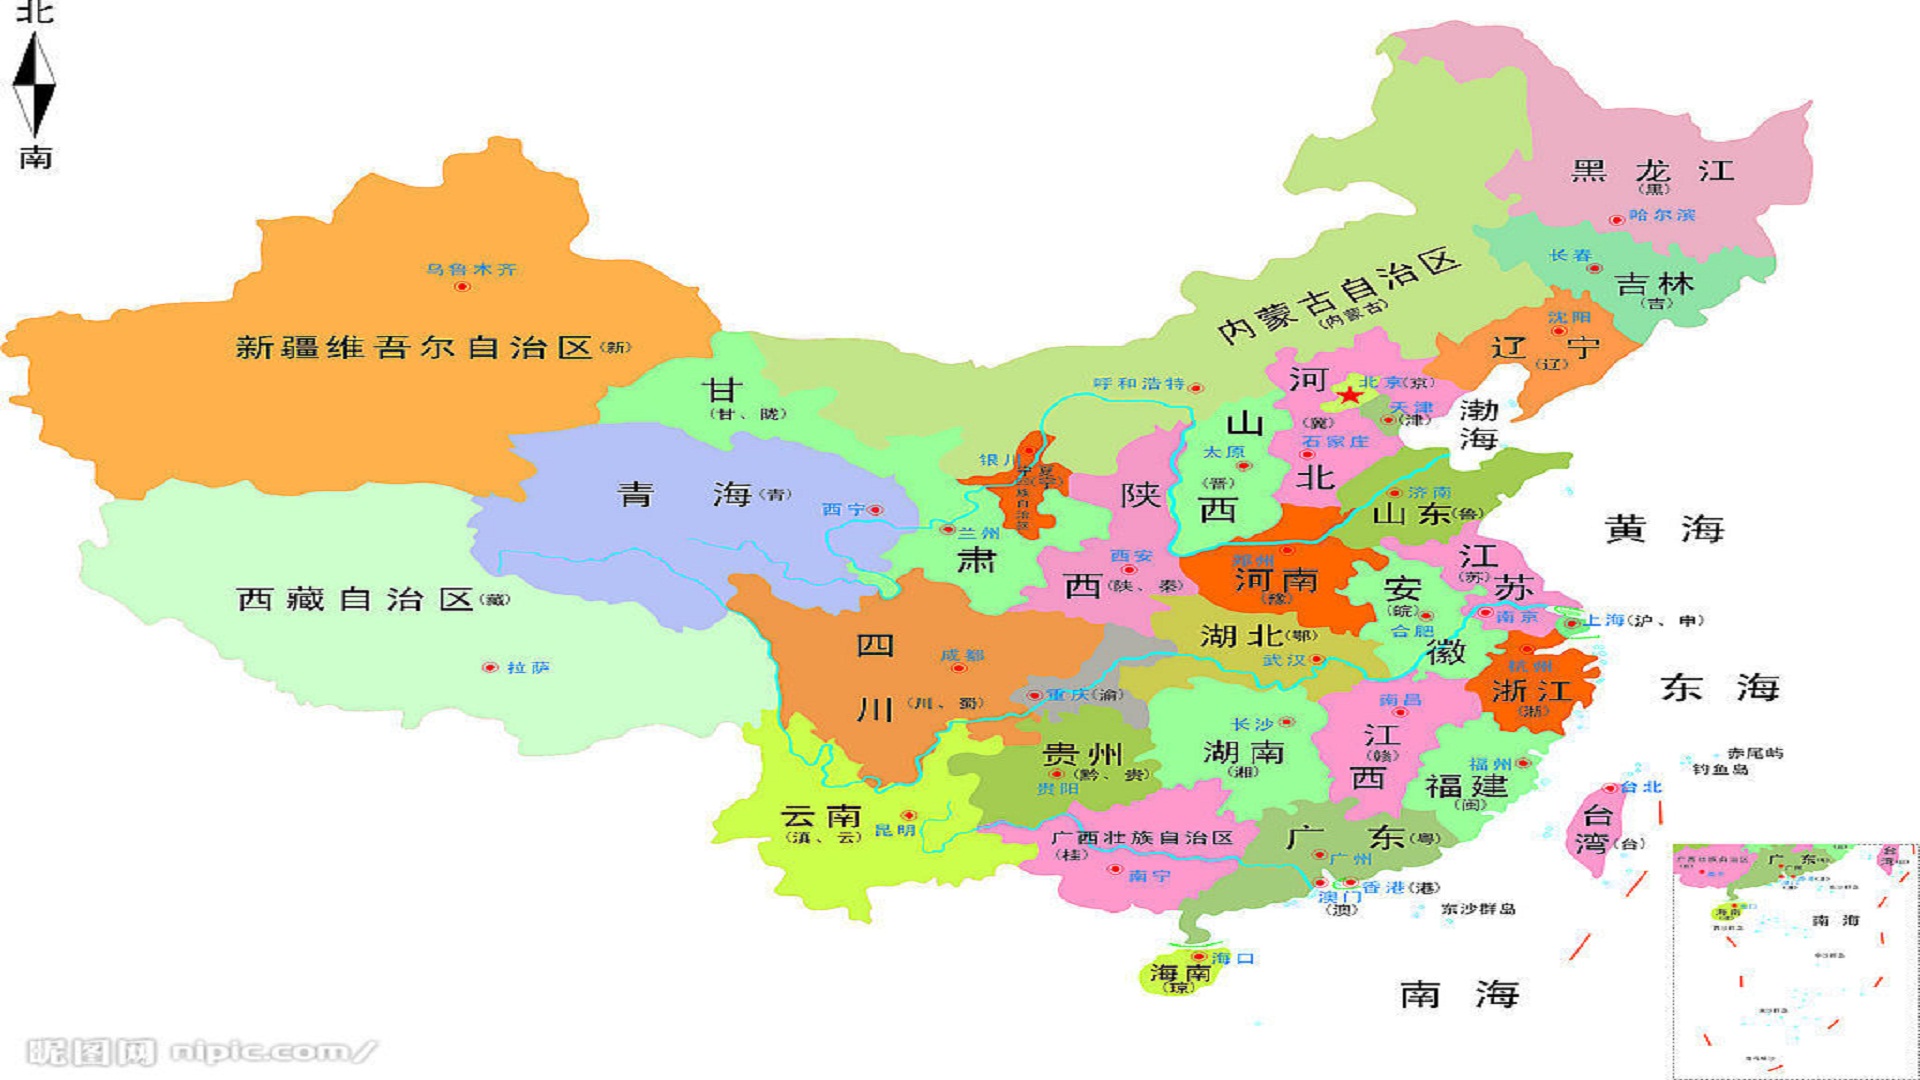 以下是2015年中国各省男性丁丁平均长度 据说是卫生部委托统计的,中国